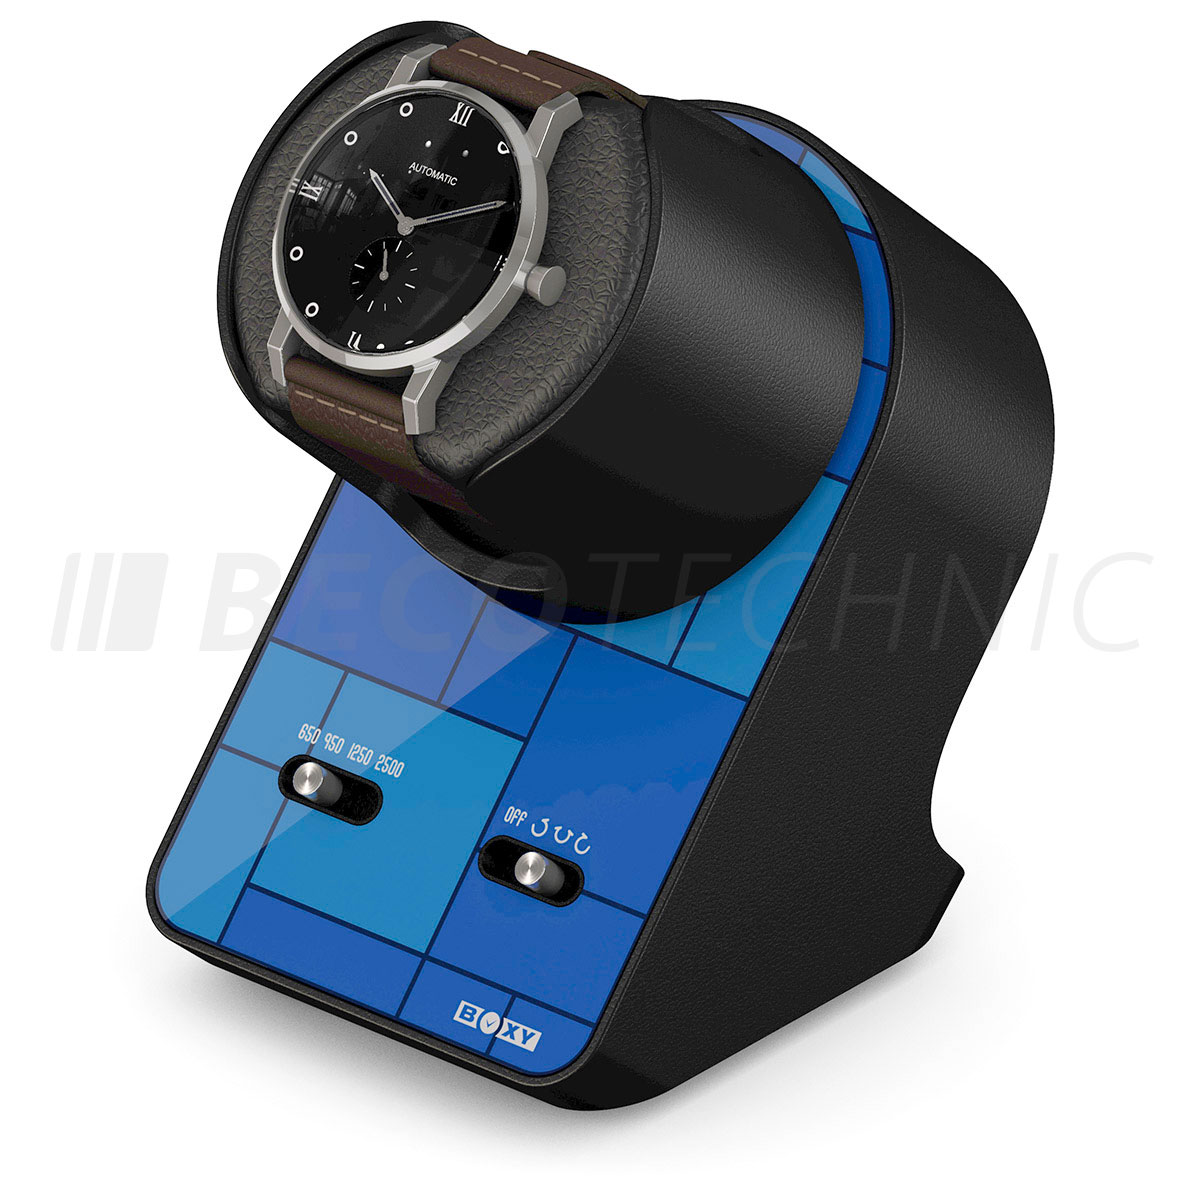 Boxy BLDC Nightstand, horlogebeweger voor 1 horloge, Graphic Blue, met USB-oplaadkabel